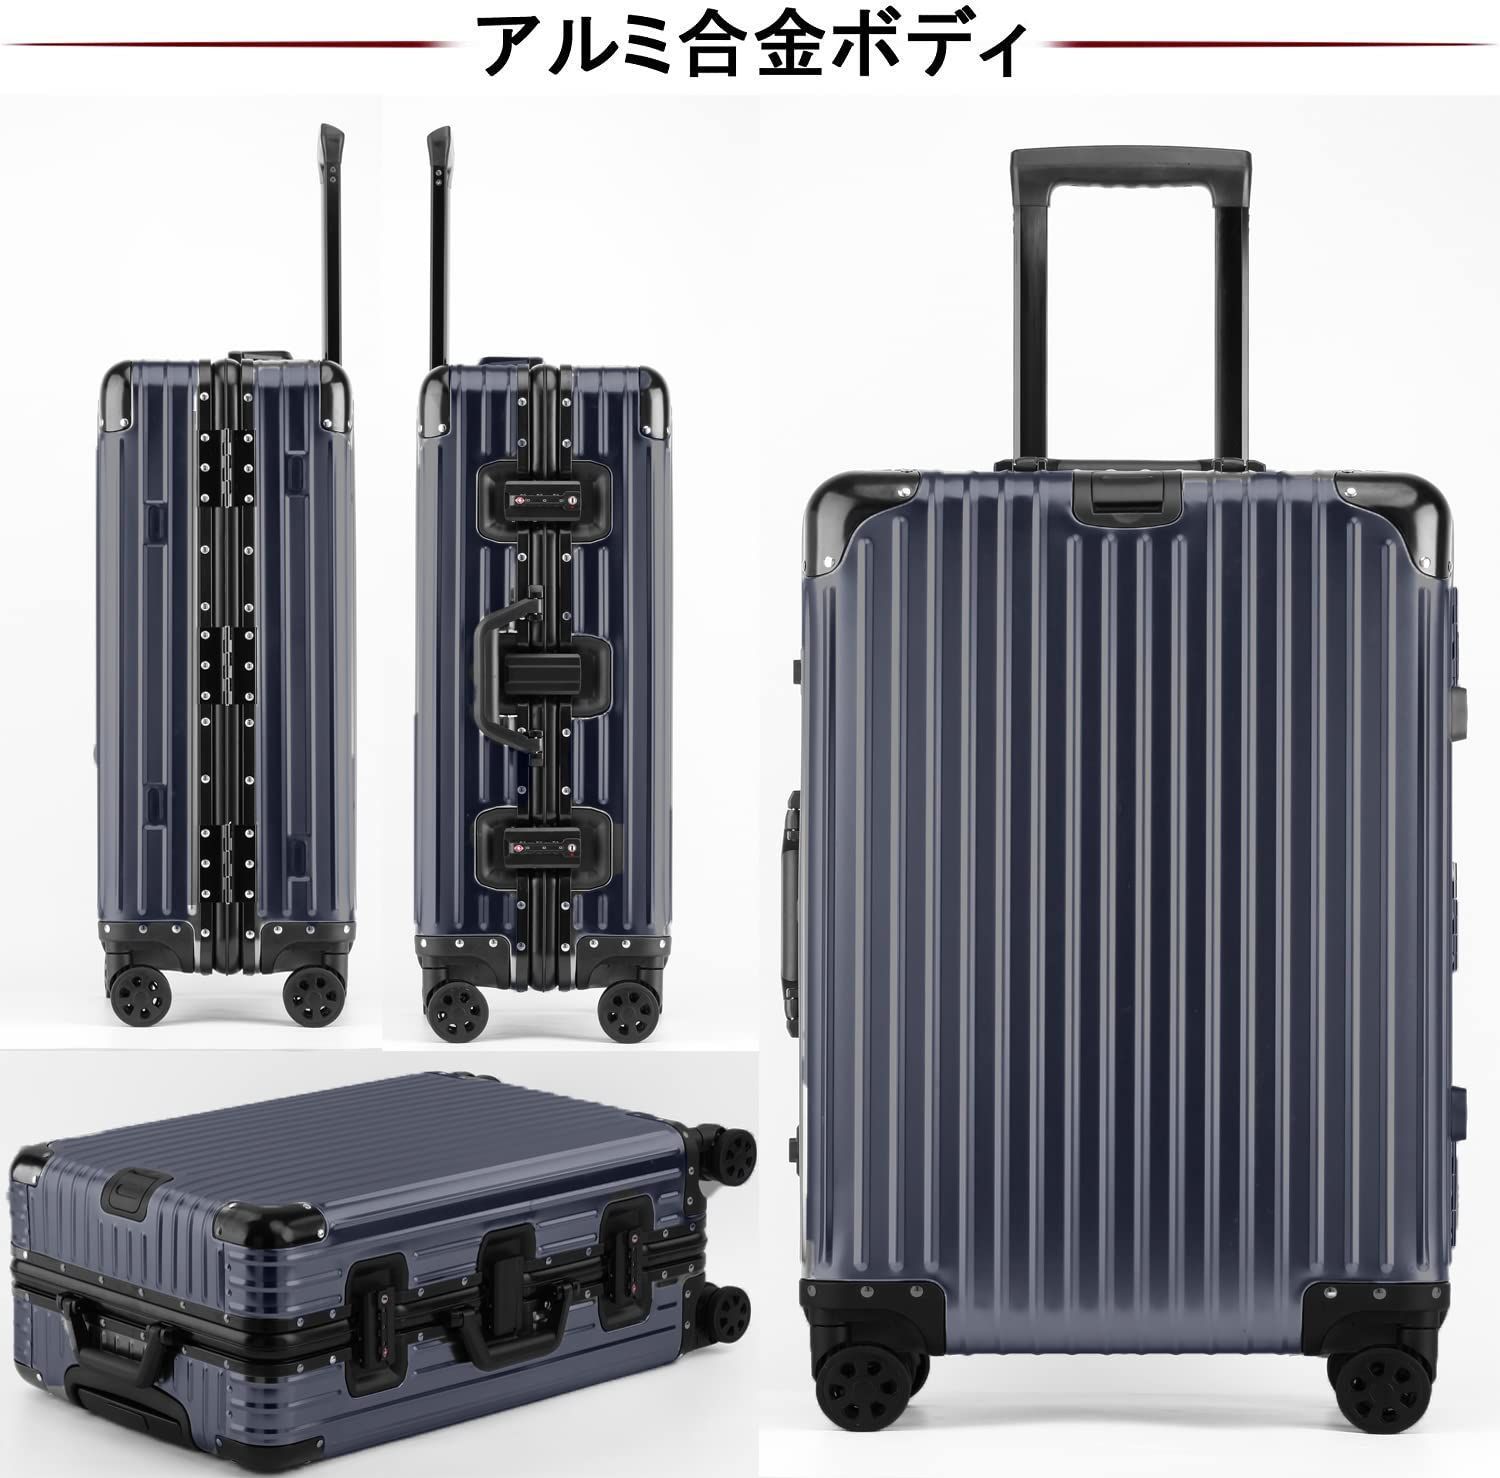 スーツケース オールアルミ合金 キャリーケース Mサイズ/4〜7泊/60L ...